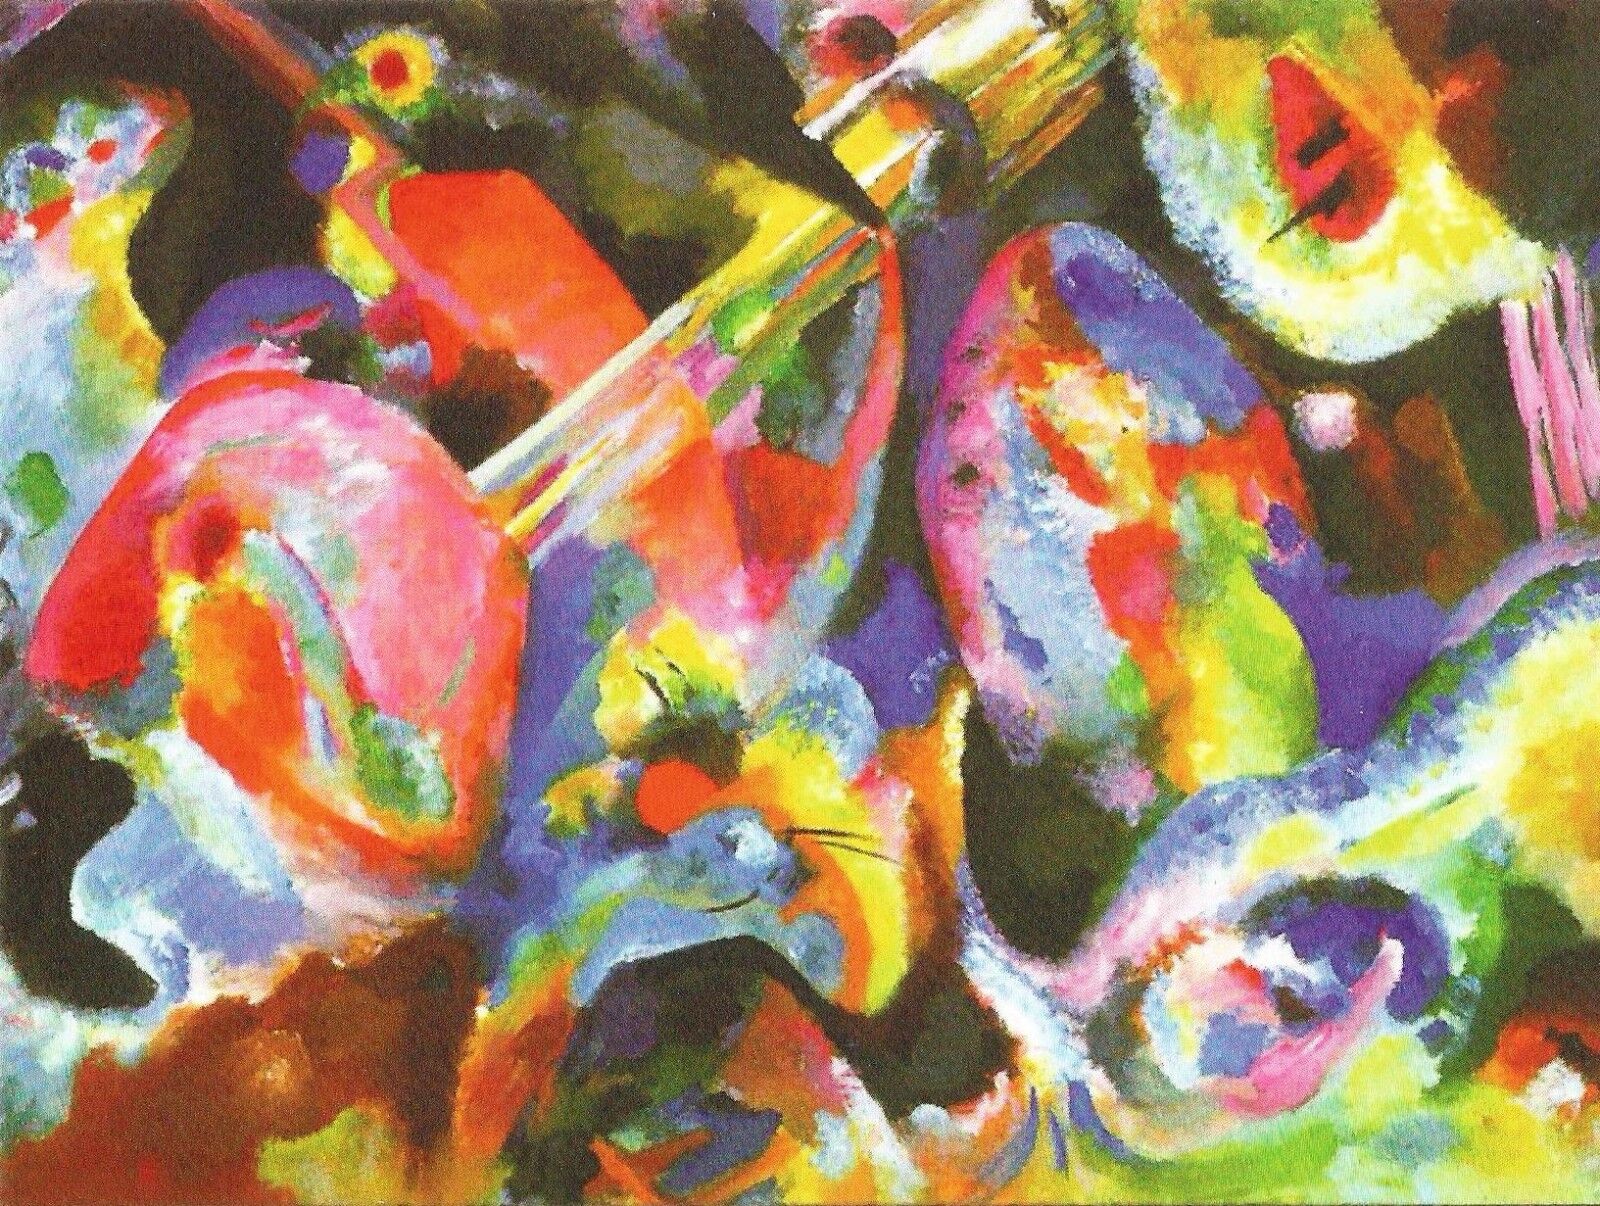 Postcard Vasily Kandinsky 